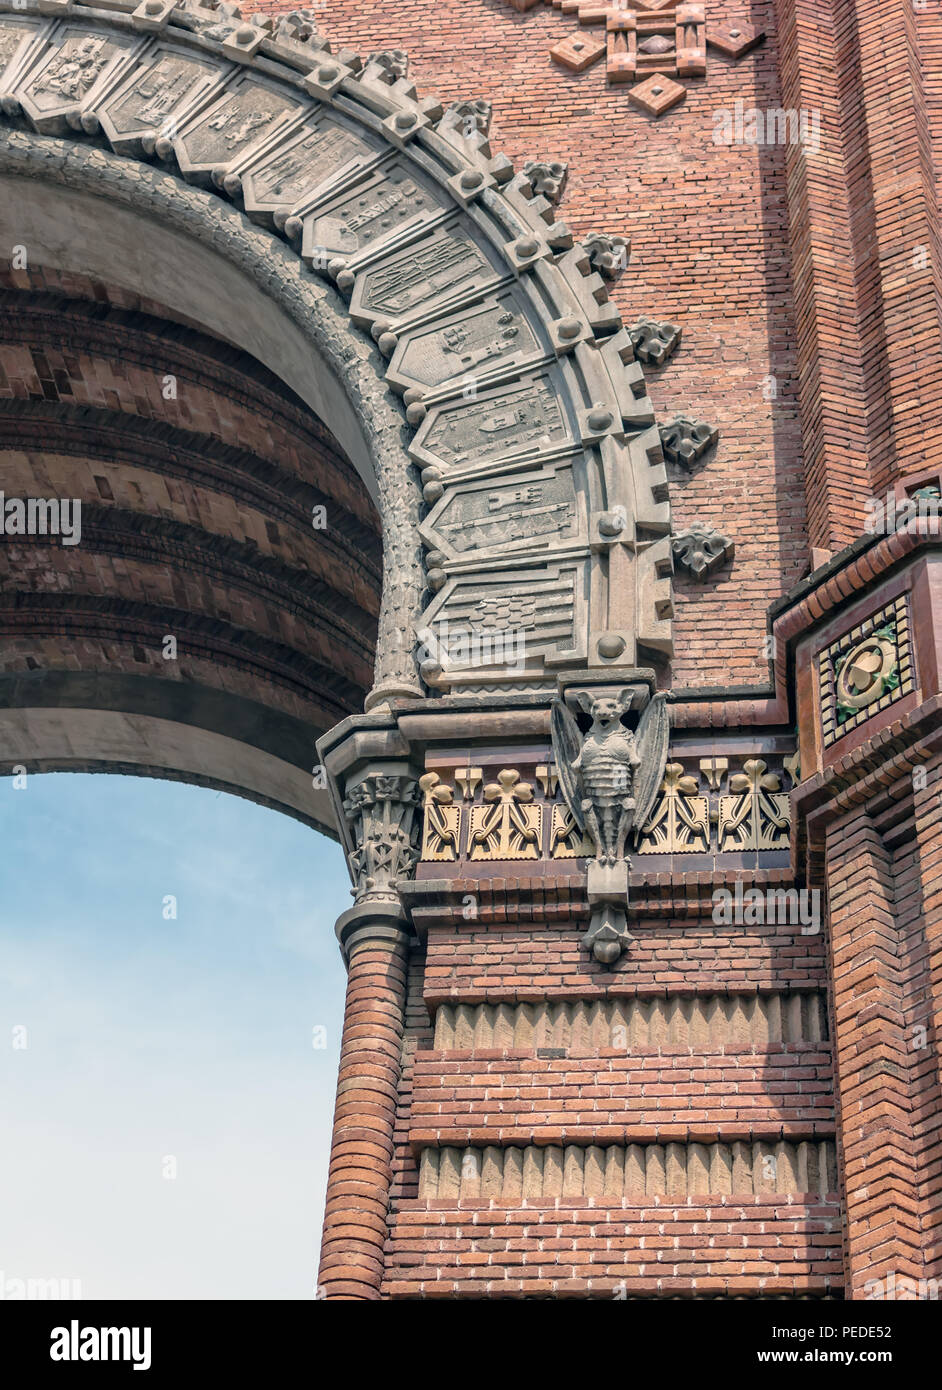 Los murciélagos de piedra sobre pilares de ladrillo rojo de la Arc de Triomf (arco de triunfo) en estilo Neo-Mudejar en Barcelona, España Foto de stock